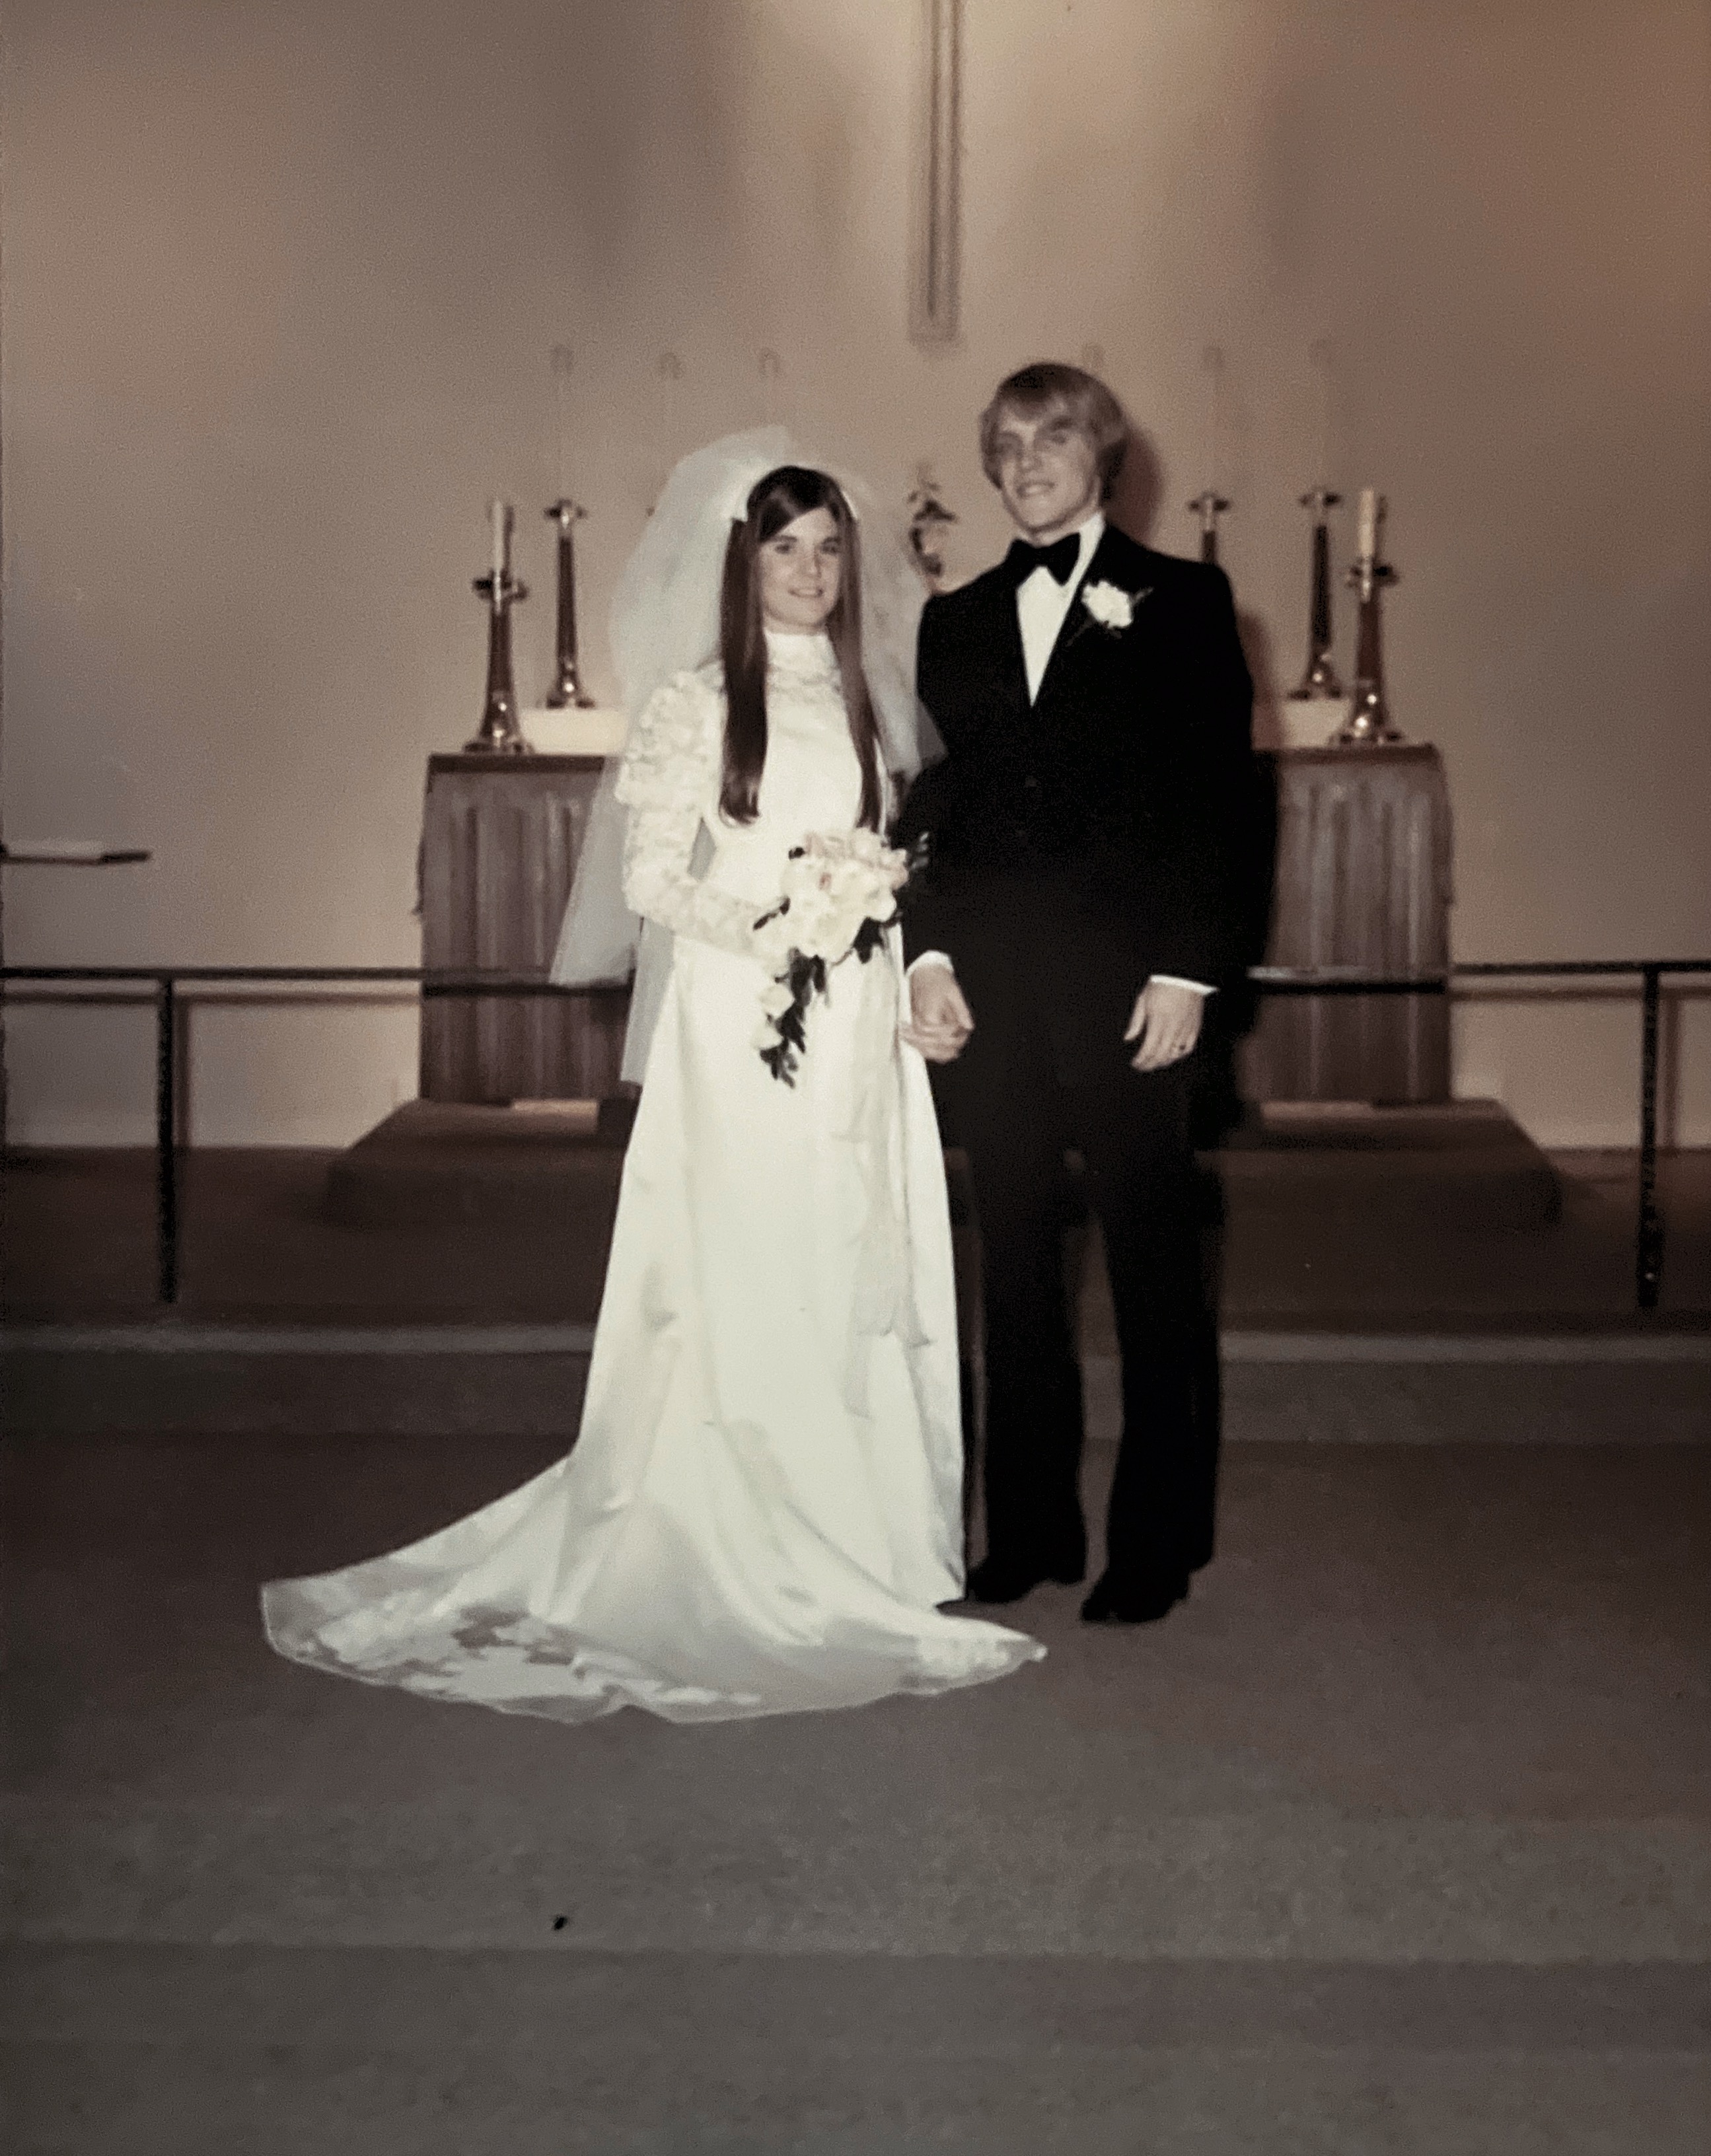 Toby & Wannie Wedding Dec 30th 1972